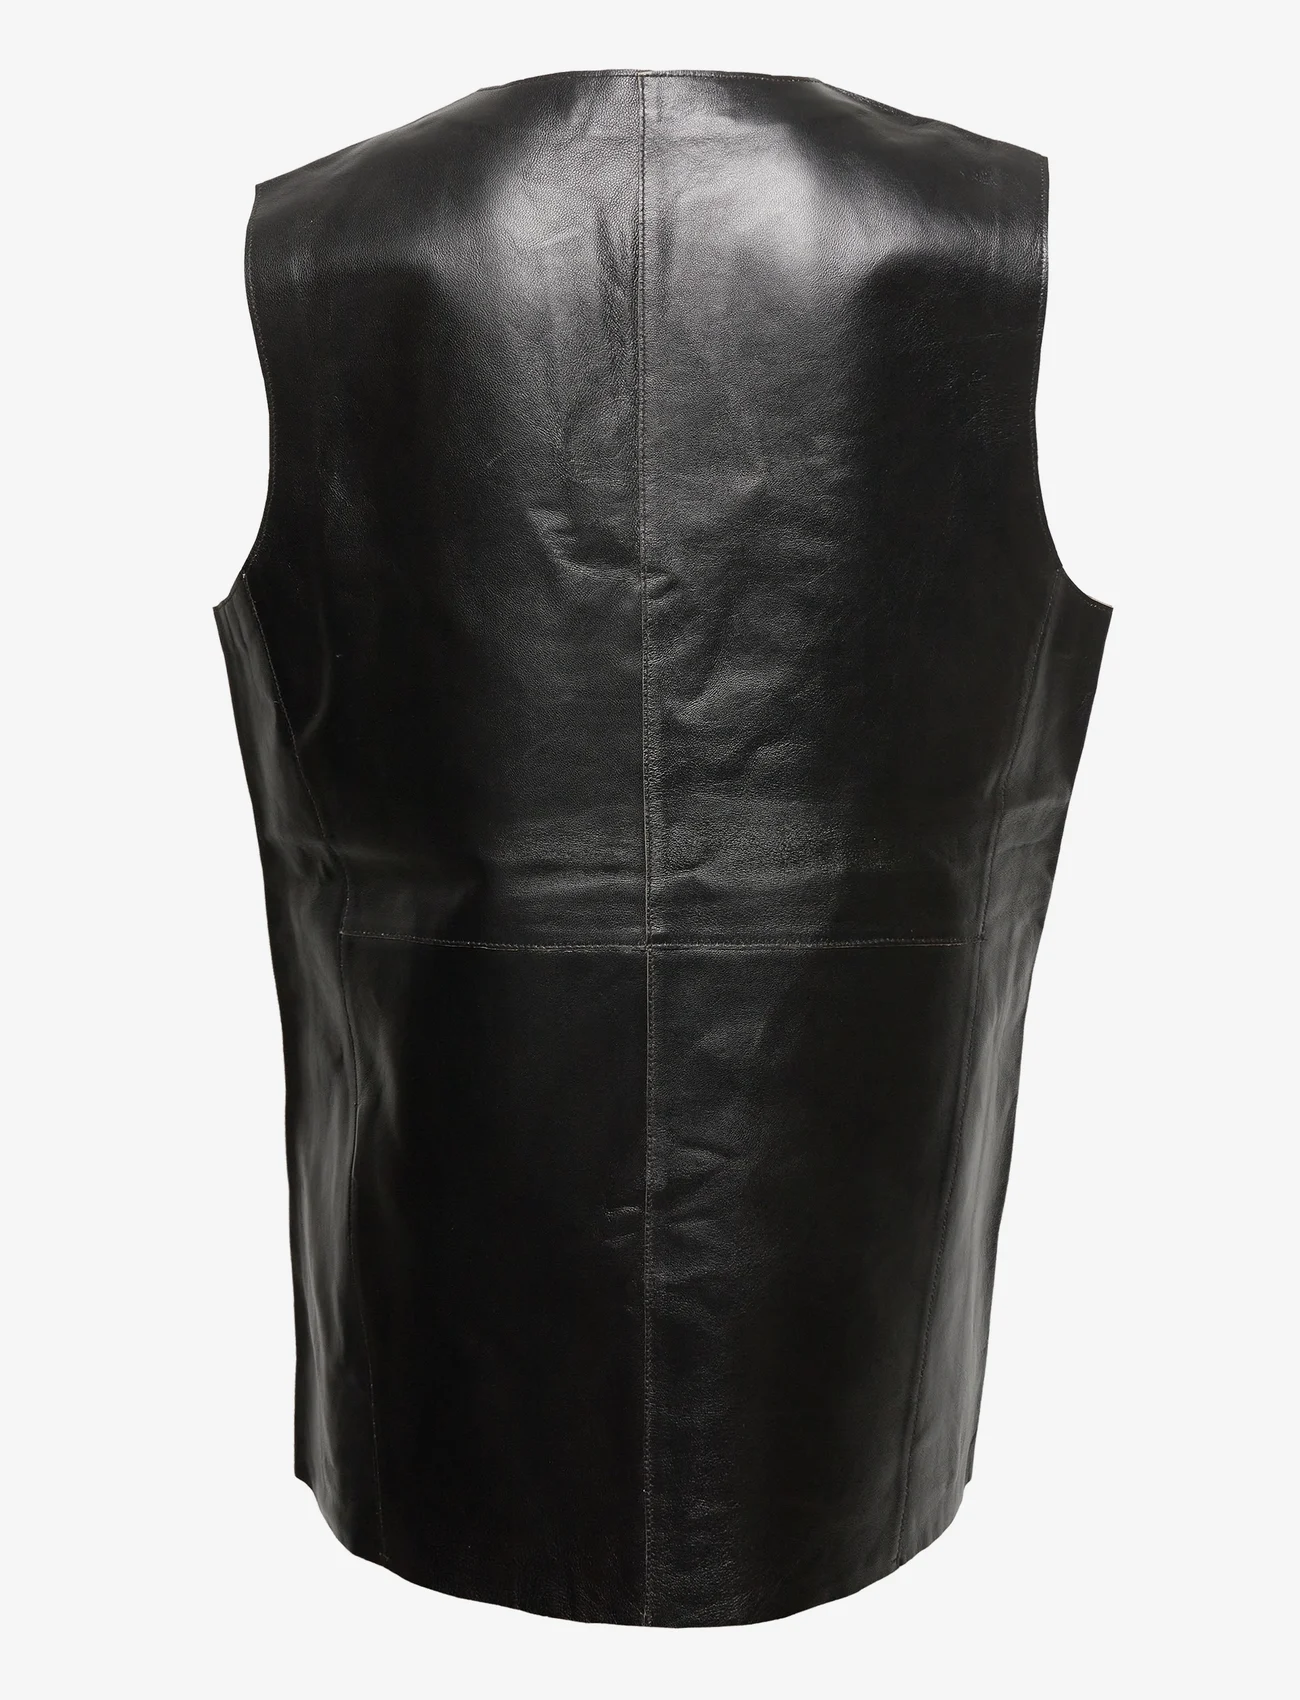 Day Birger et Mikkelsen - Bree - Leather Deluxe - sleeveless blouses - black - 1